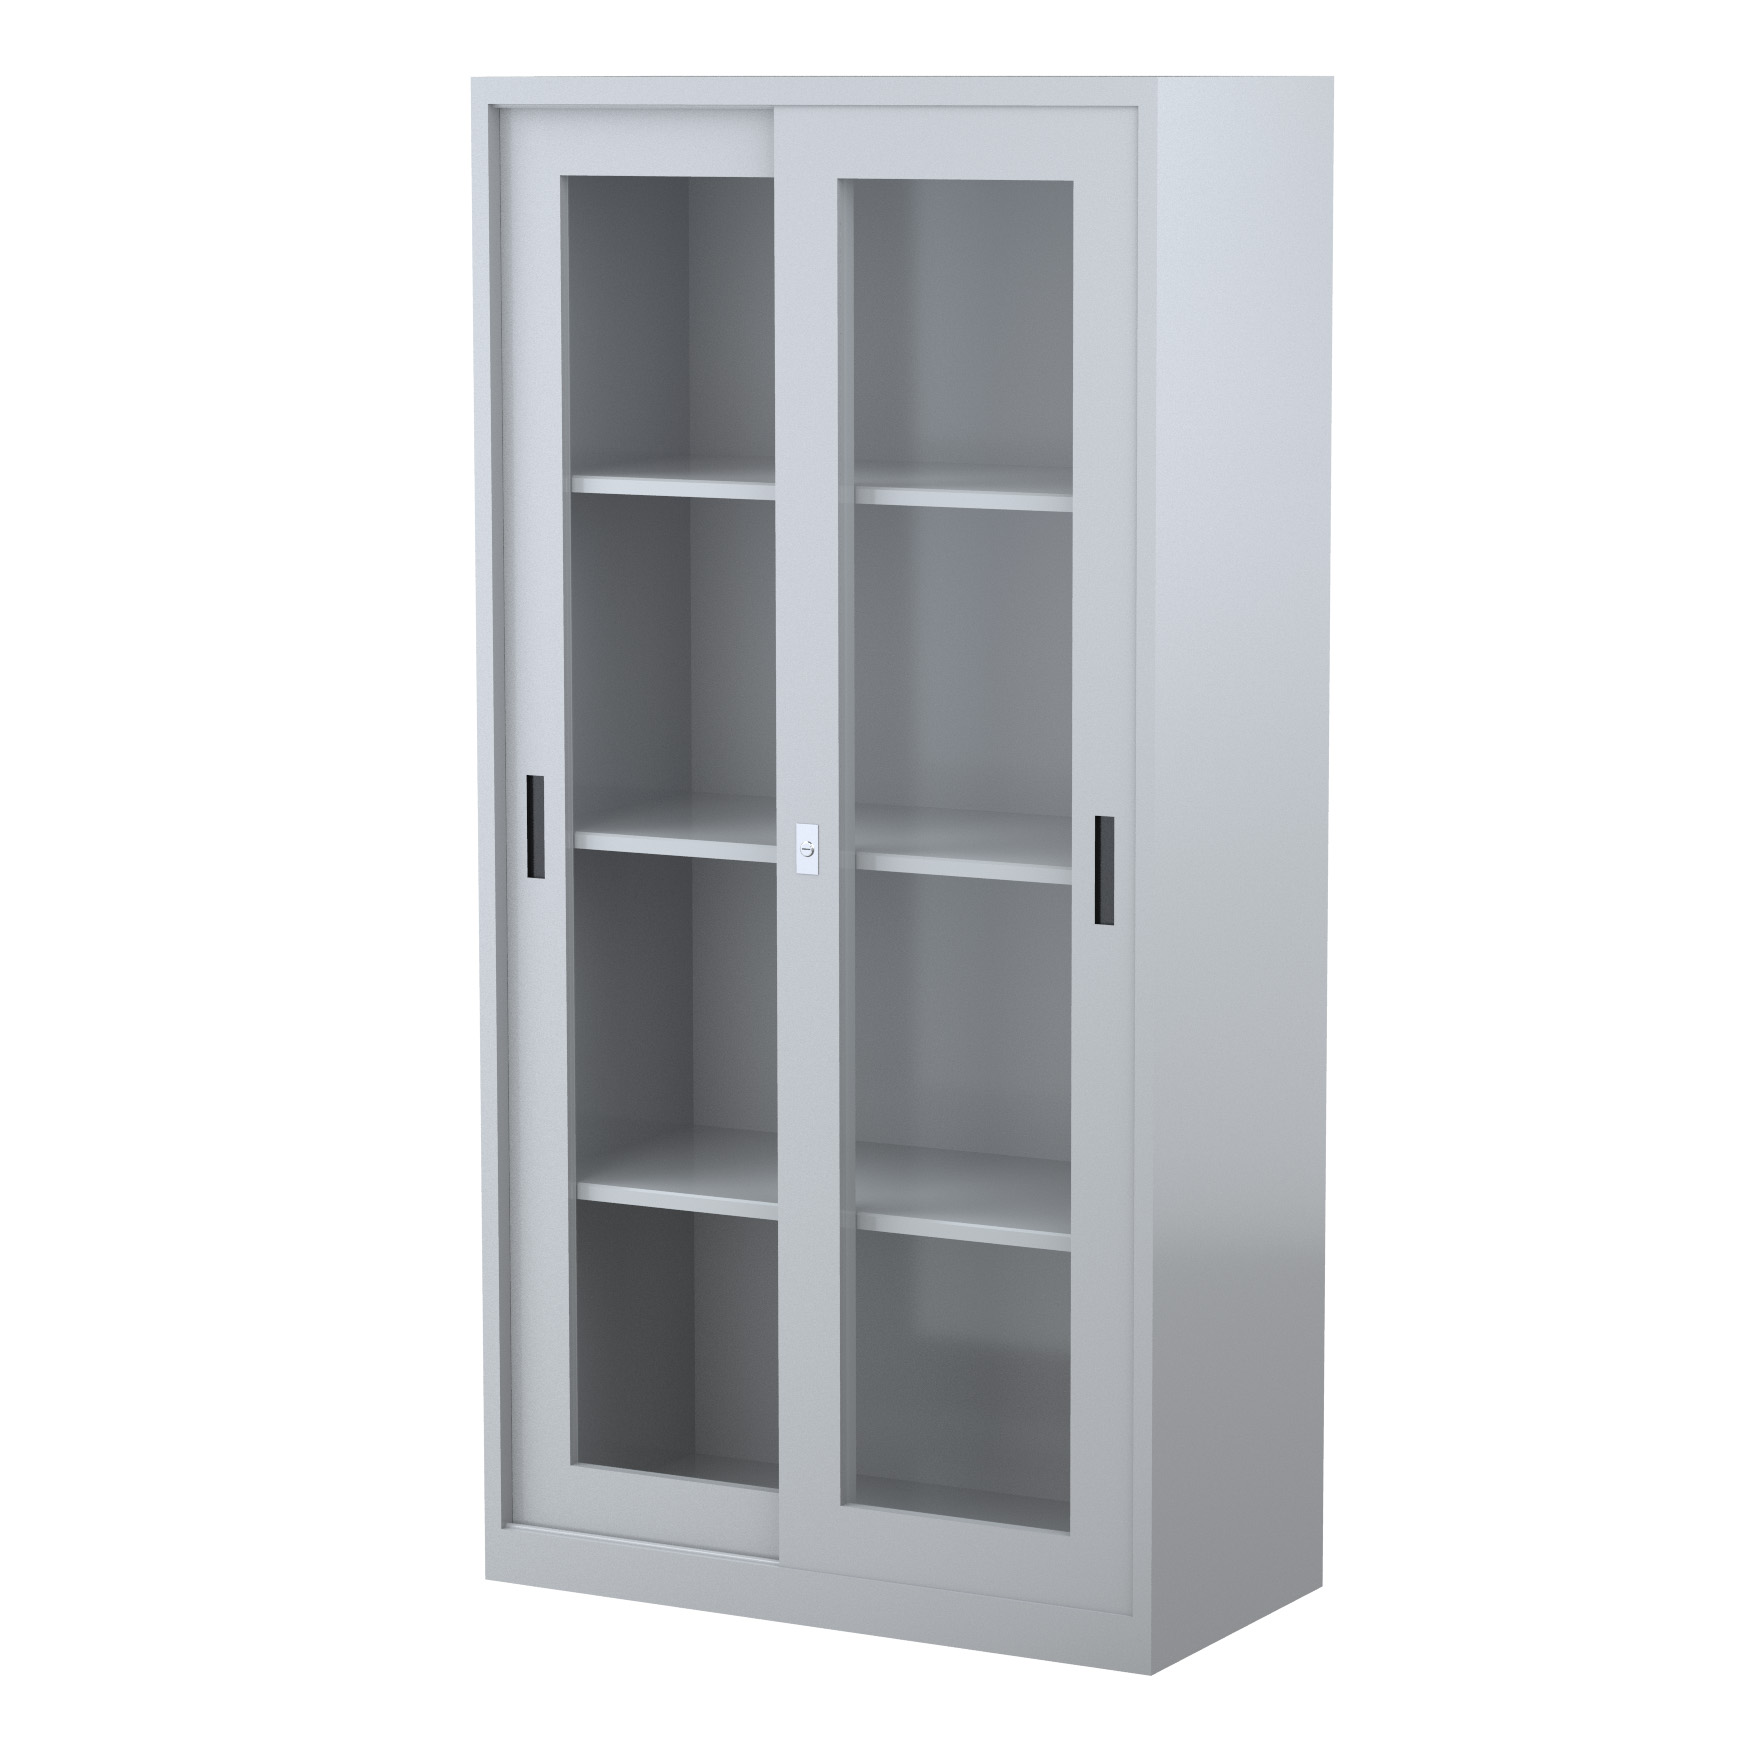 GD1830_1500 - STEELCO SG Cabinet 1830H x 1500W x 465D - 3 Shelves-GR10.jpg